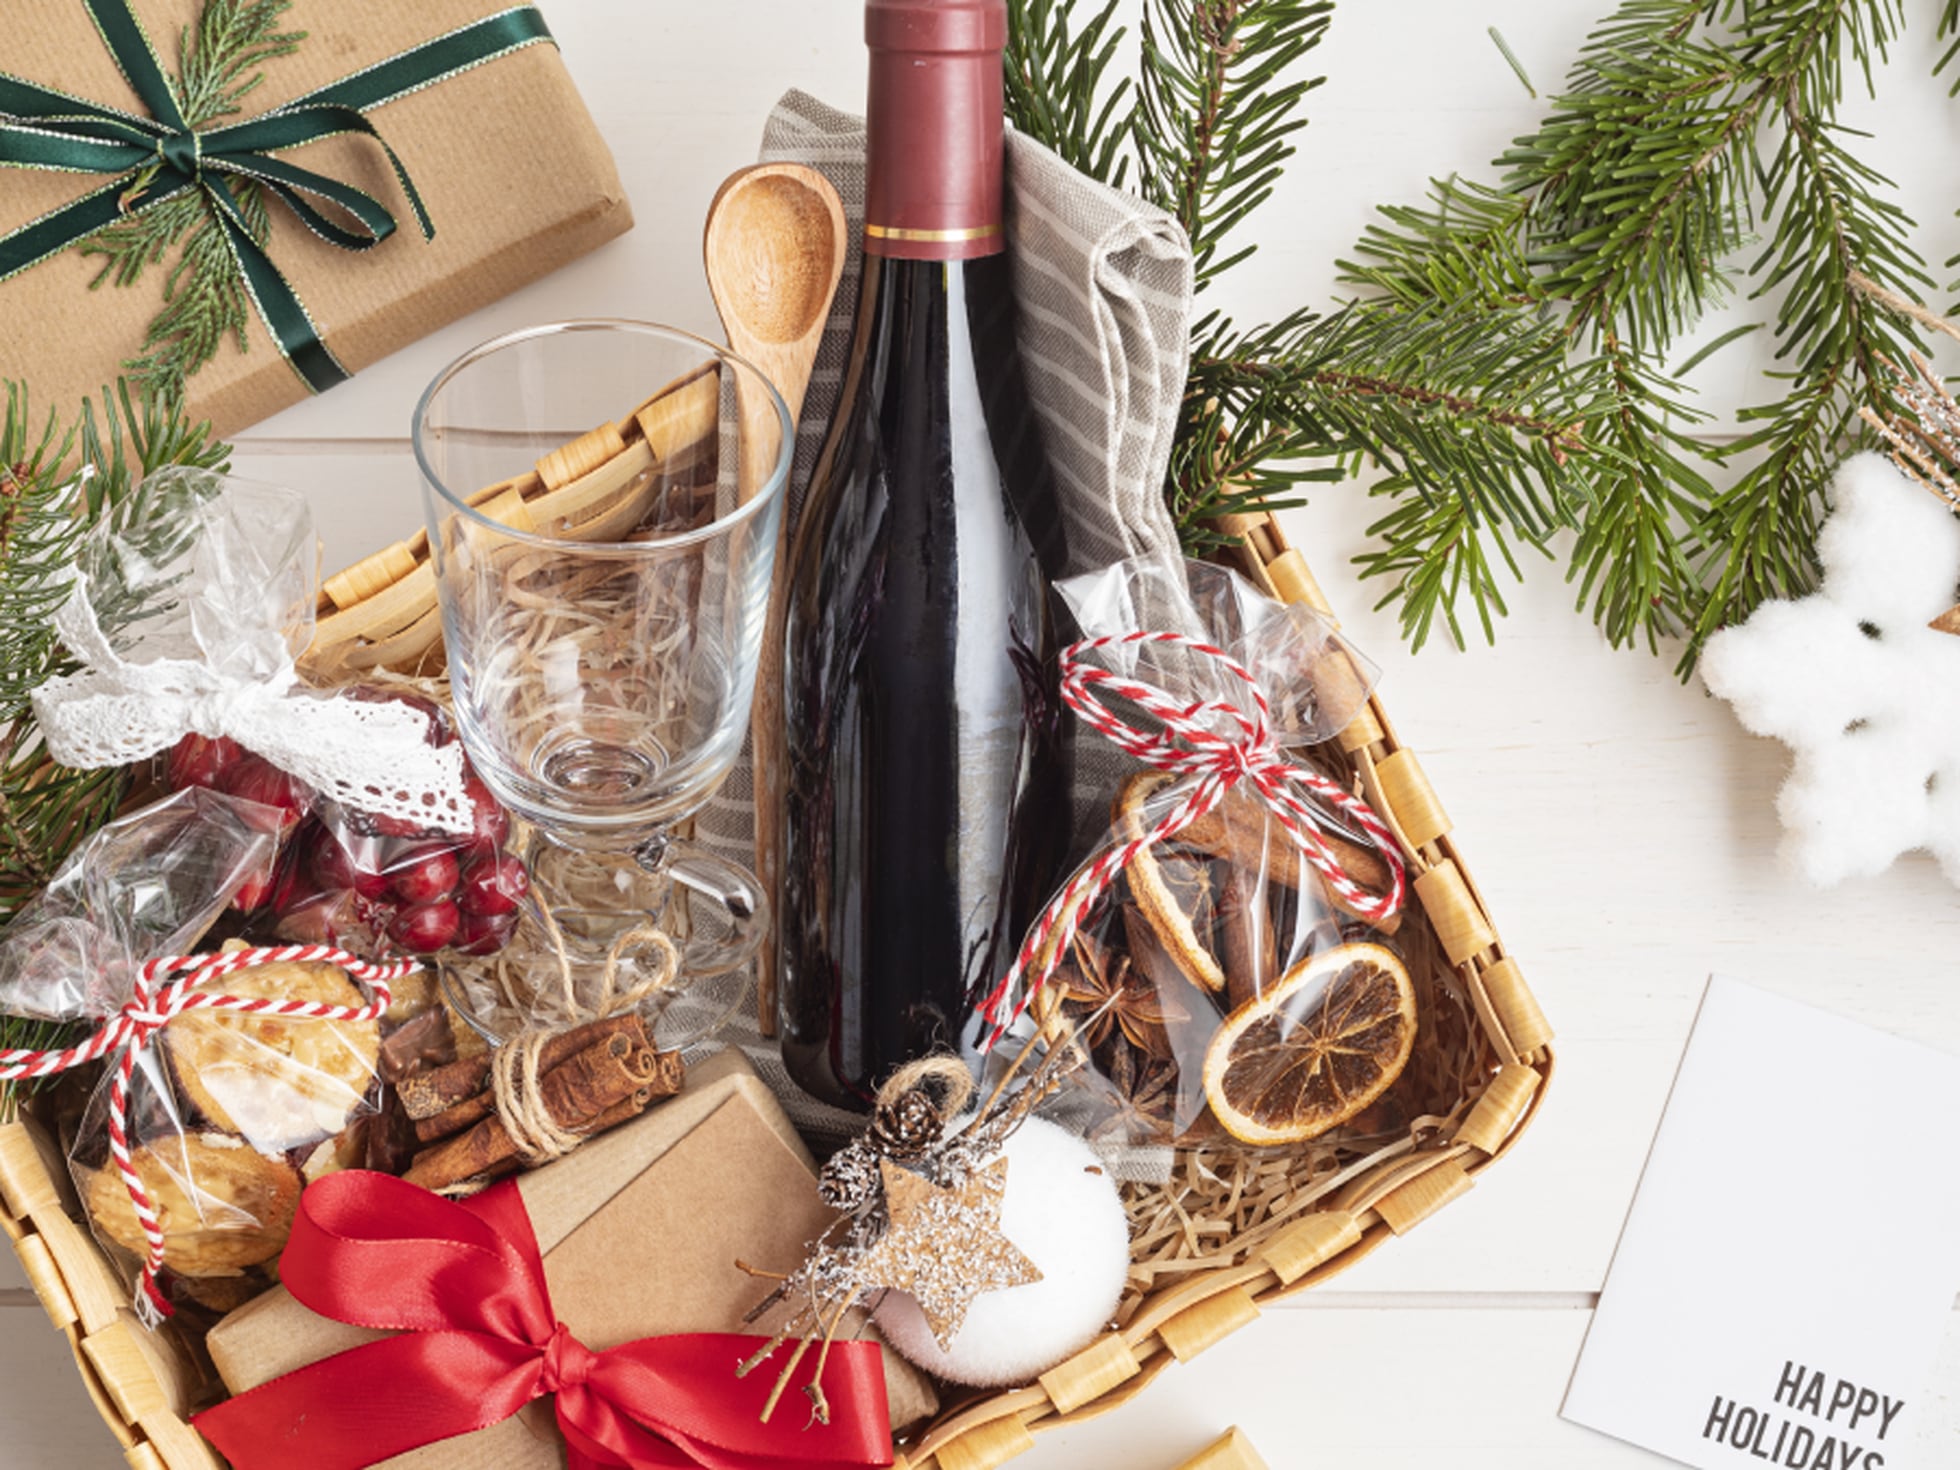 Dulces para regalar y festivos - Envío Gratis*